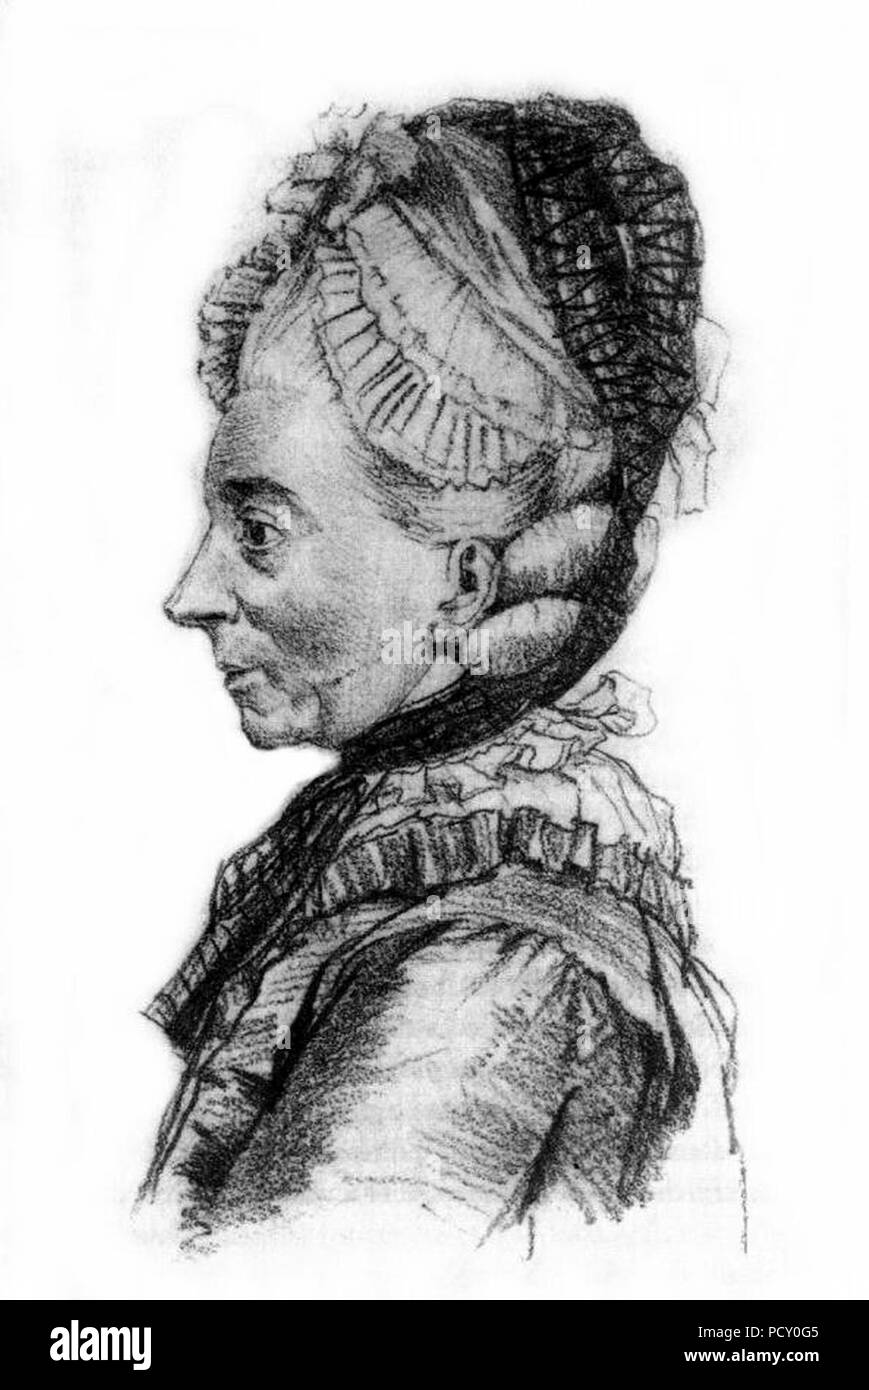 Amalie-von-Preussen-Aebtissin-von-Quedlinburg-im-Alter1723-1787-Zeichnung-von-Adolph-Menzel. Stock Photo